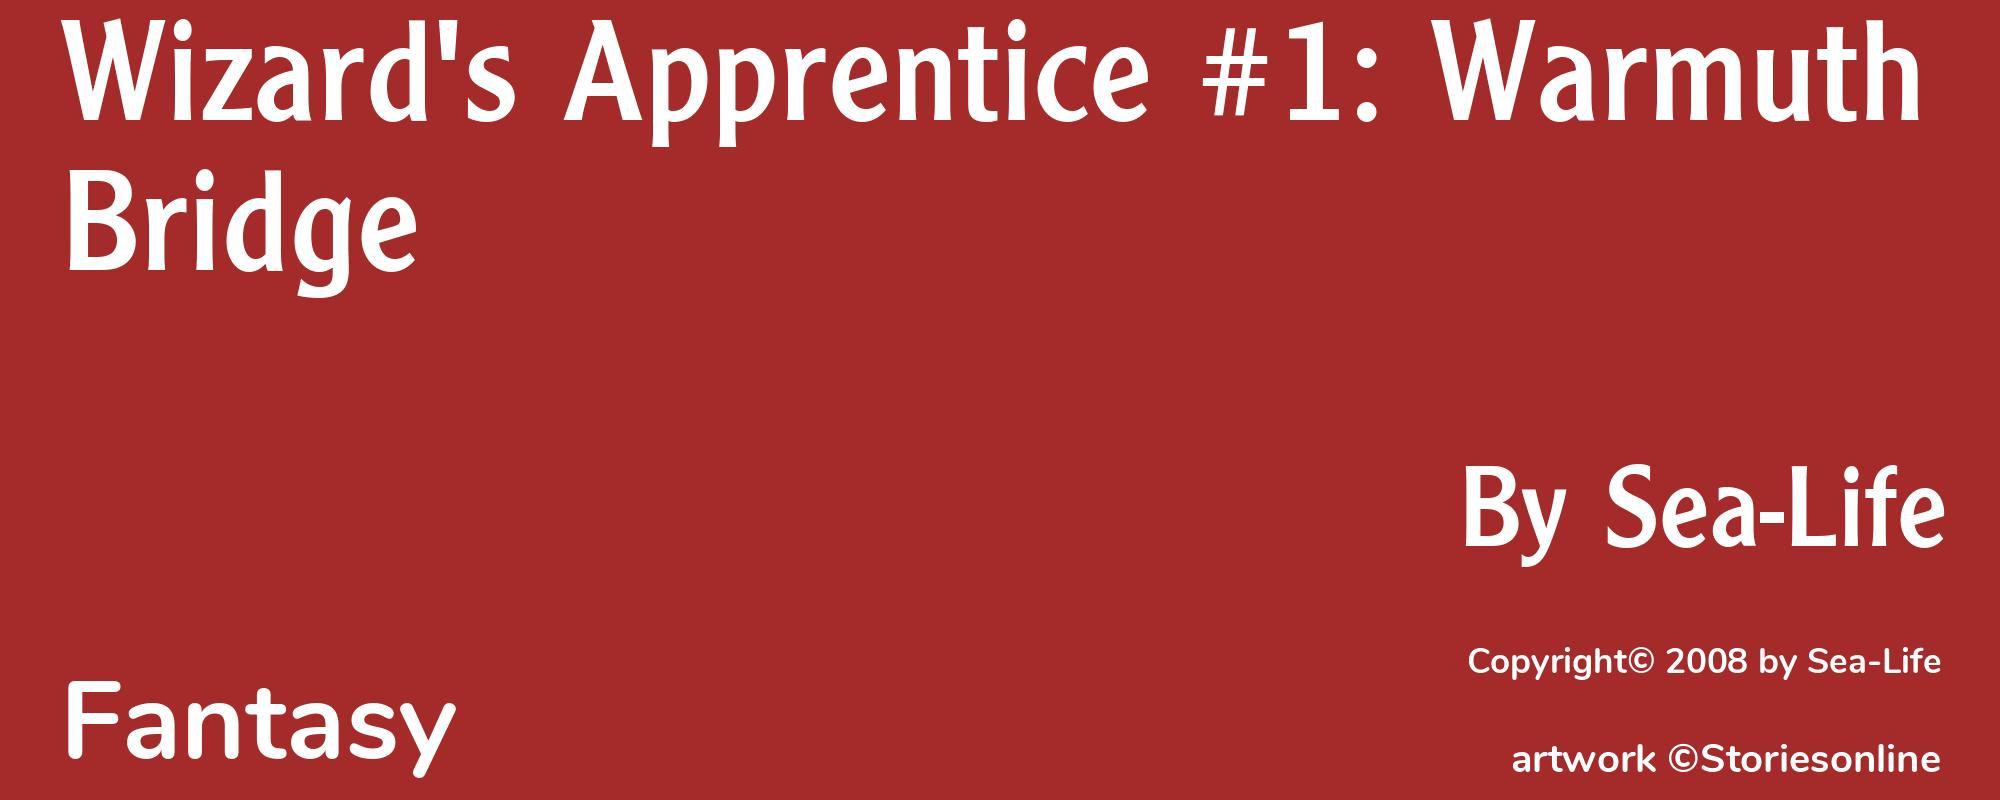 Wizard's Apprentice #1: Warmuth Bridge - Cover